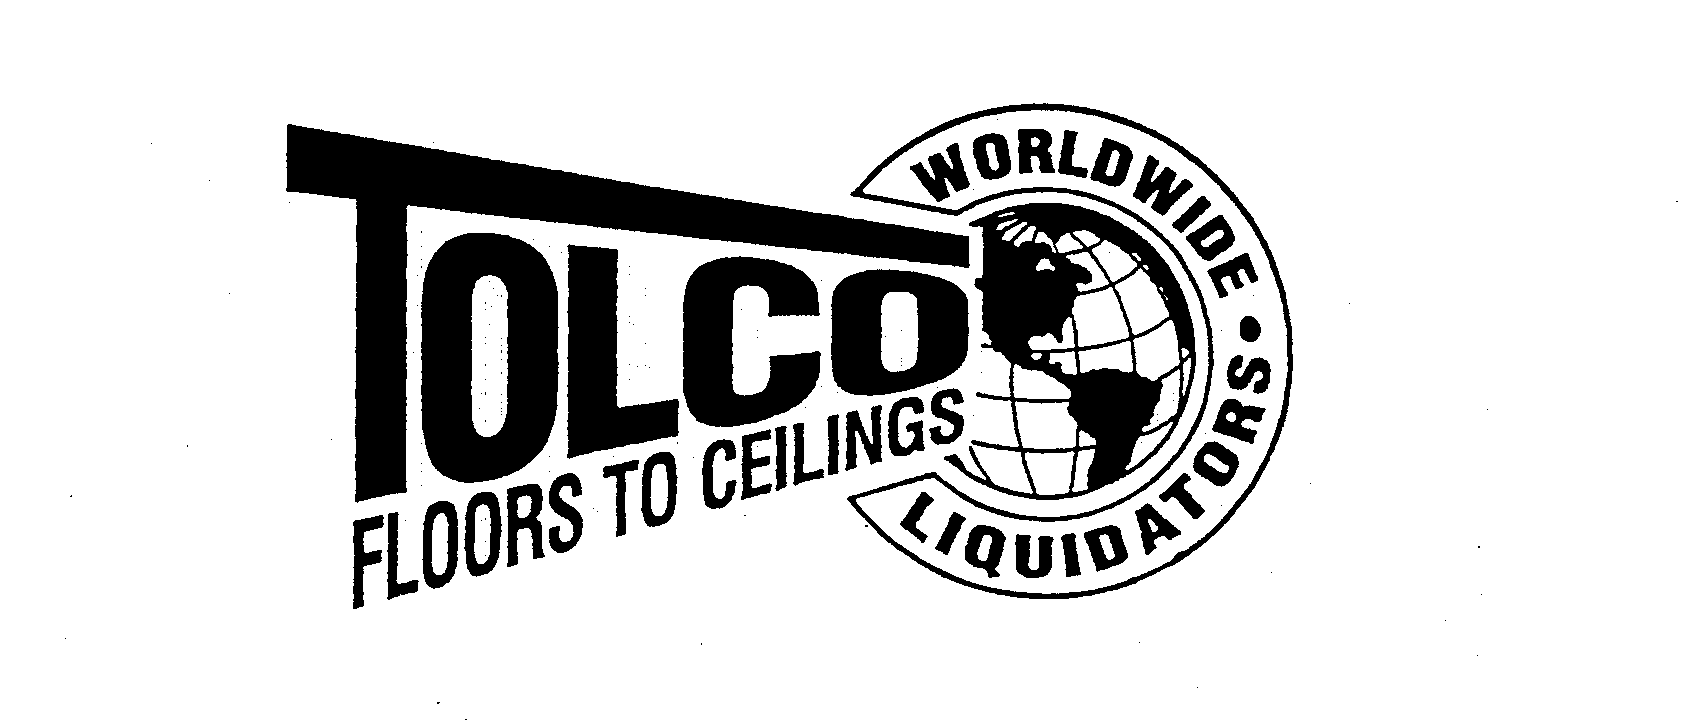  TOLCO FLOORS TO CEILINGS WORLDWIDE LIQUIDATORS